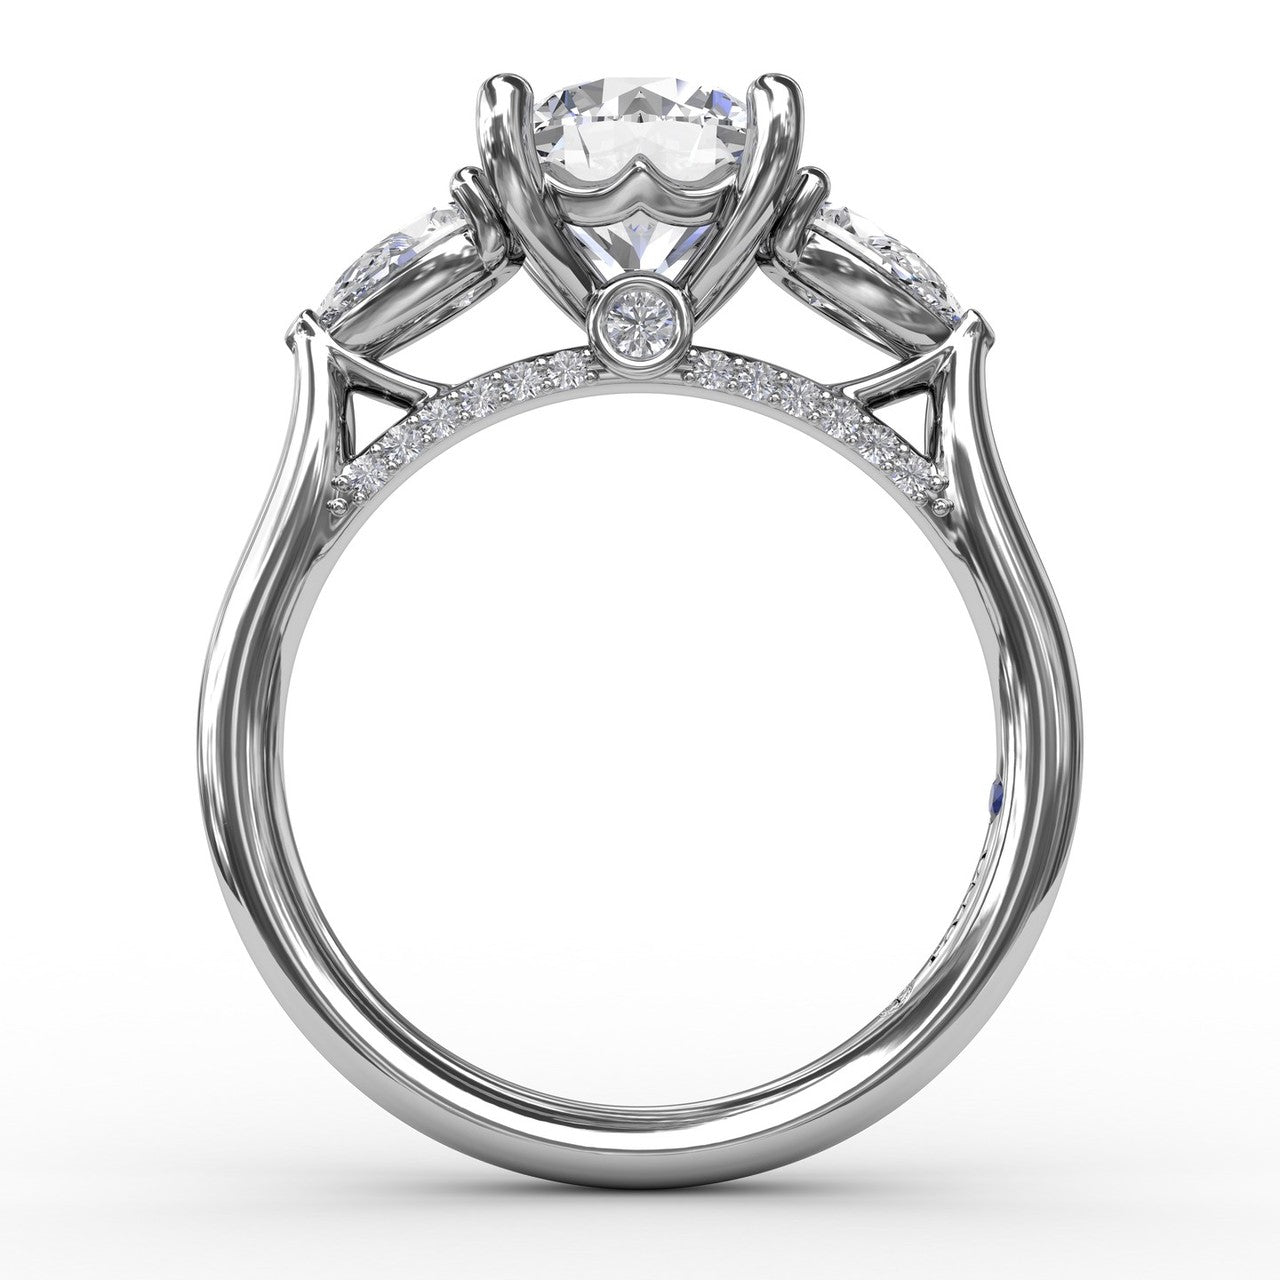 FANA 14 Karat White Gold Side Stones Round Shape Engagement Ring S3226/WG